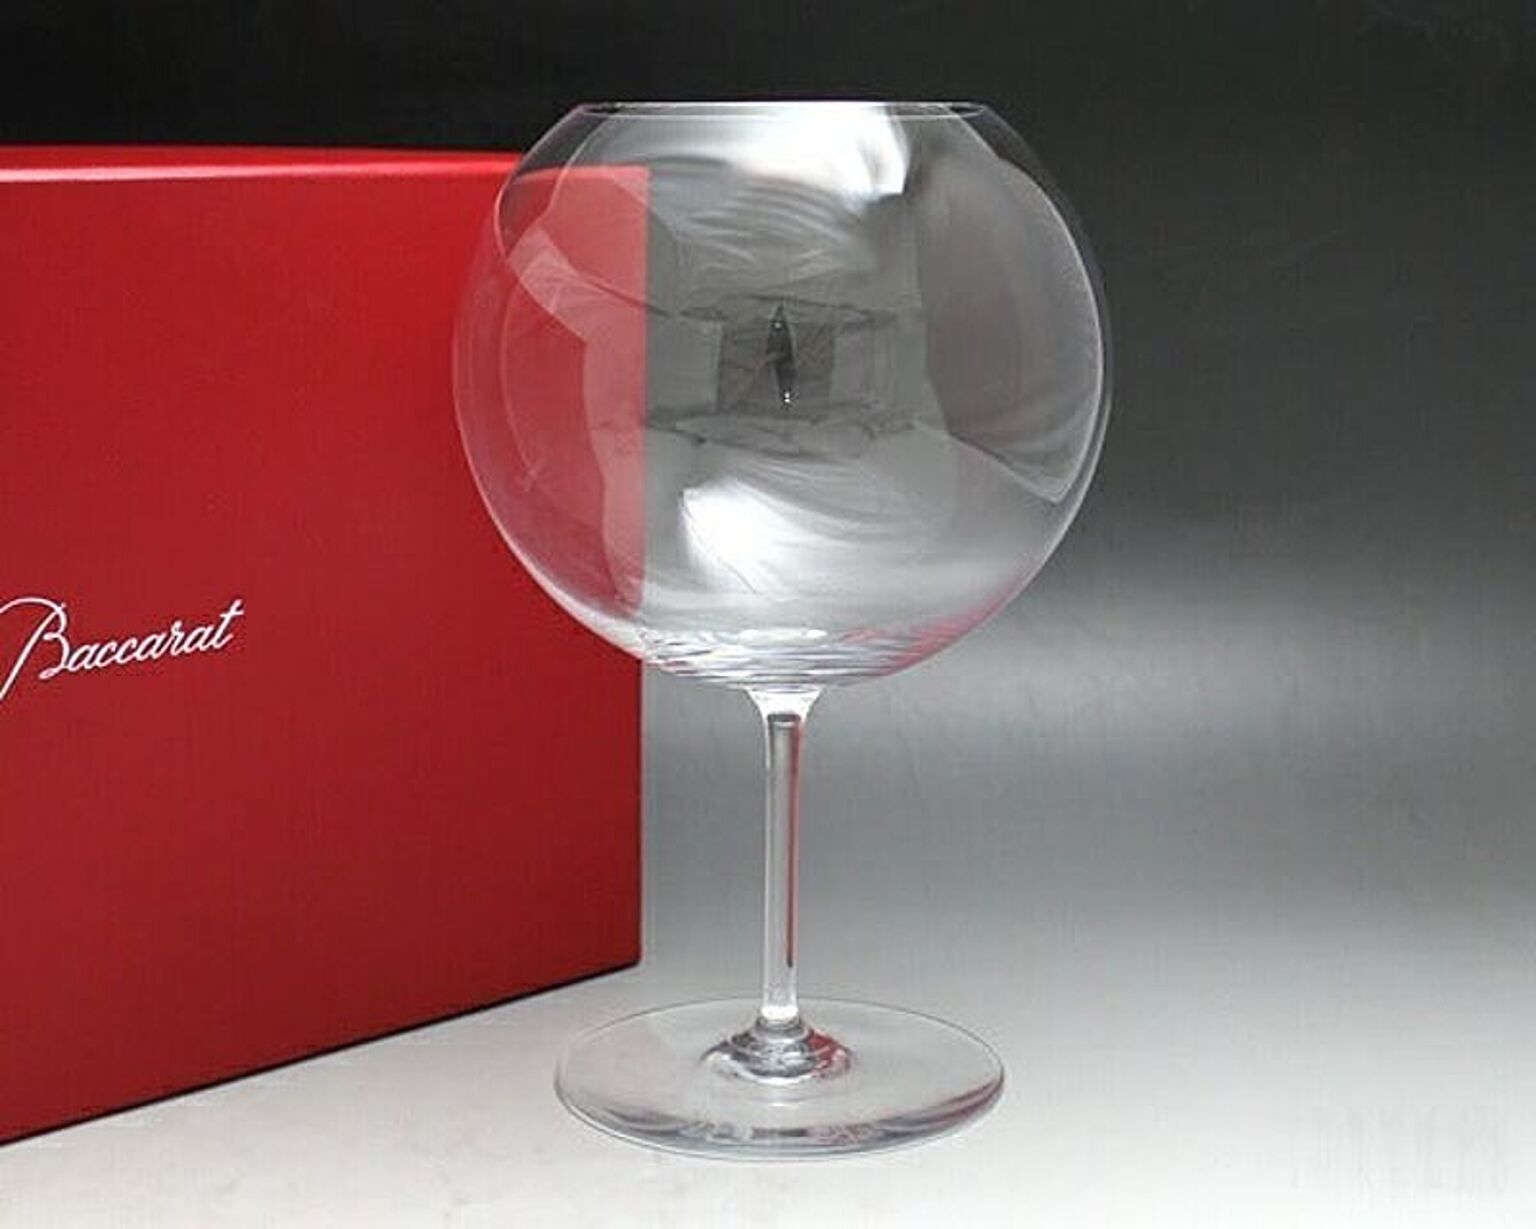 バカラ テイスティンググラス デギュスタシオン 1100-173 ロマネコンティ - 通販 | RoomClipショッピング